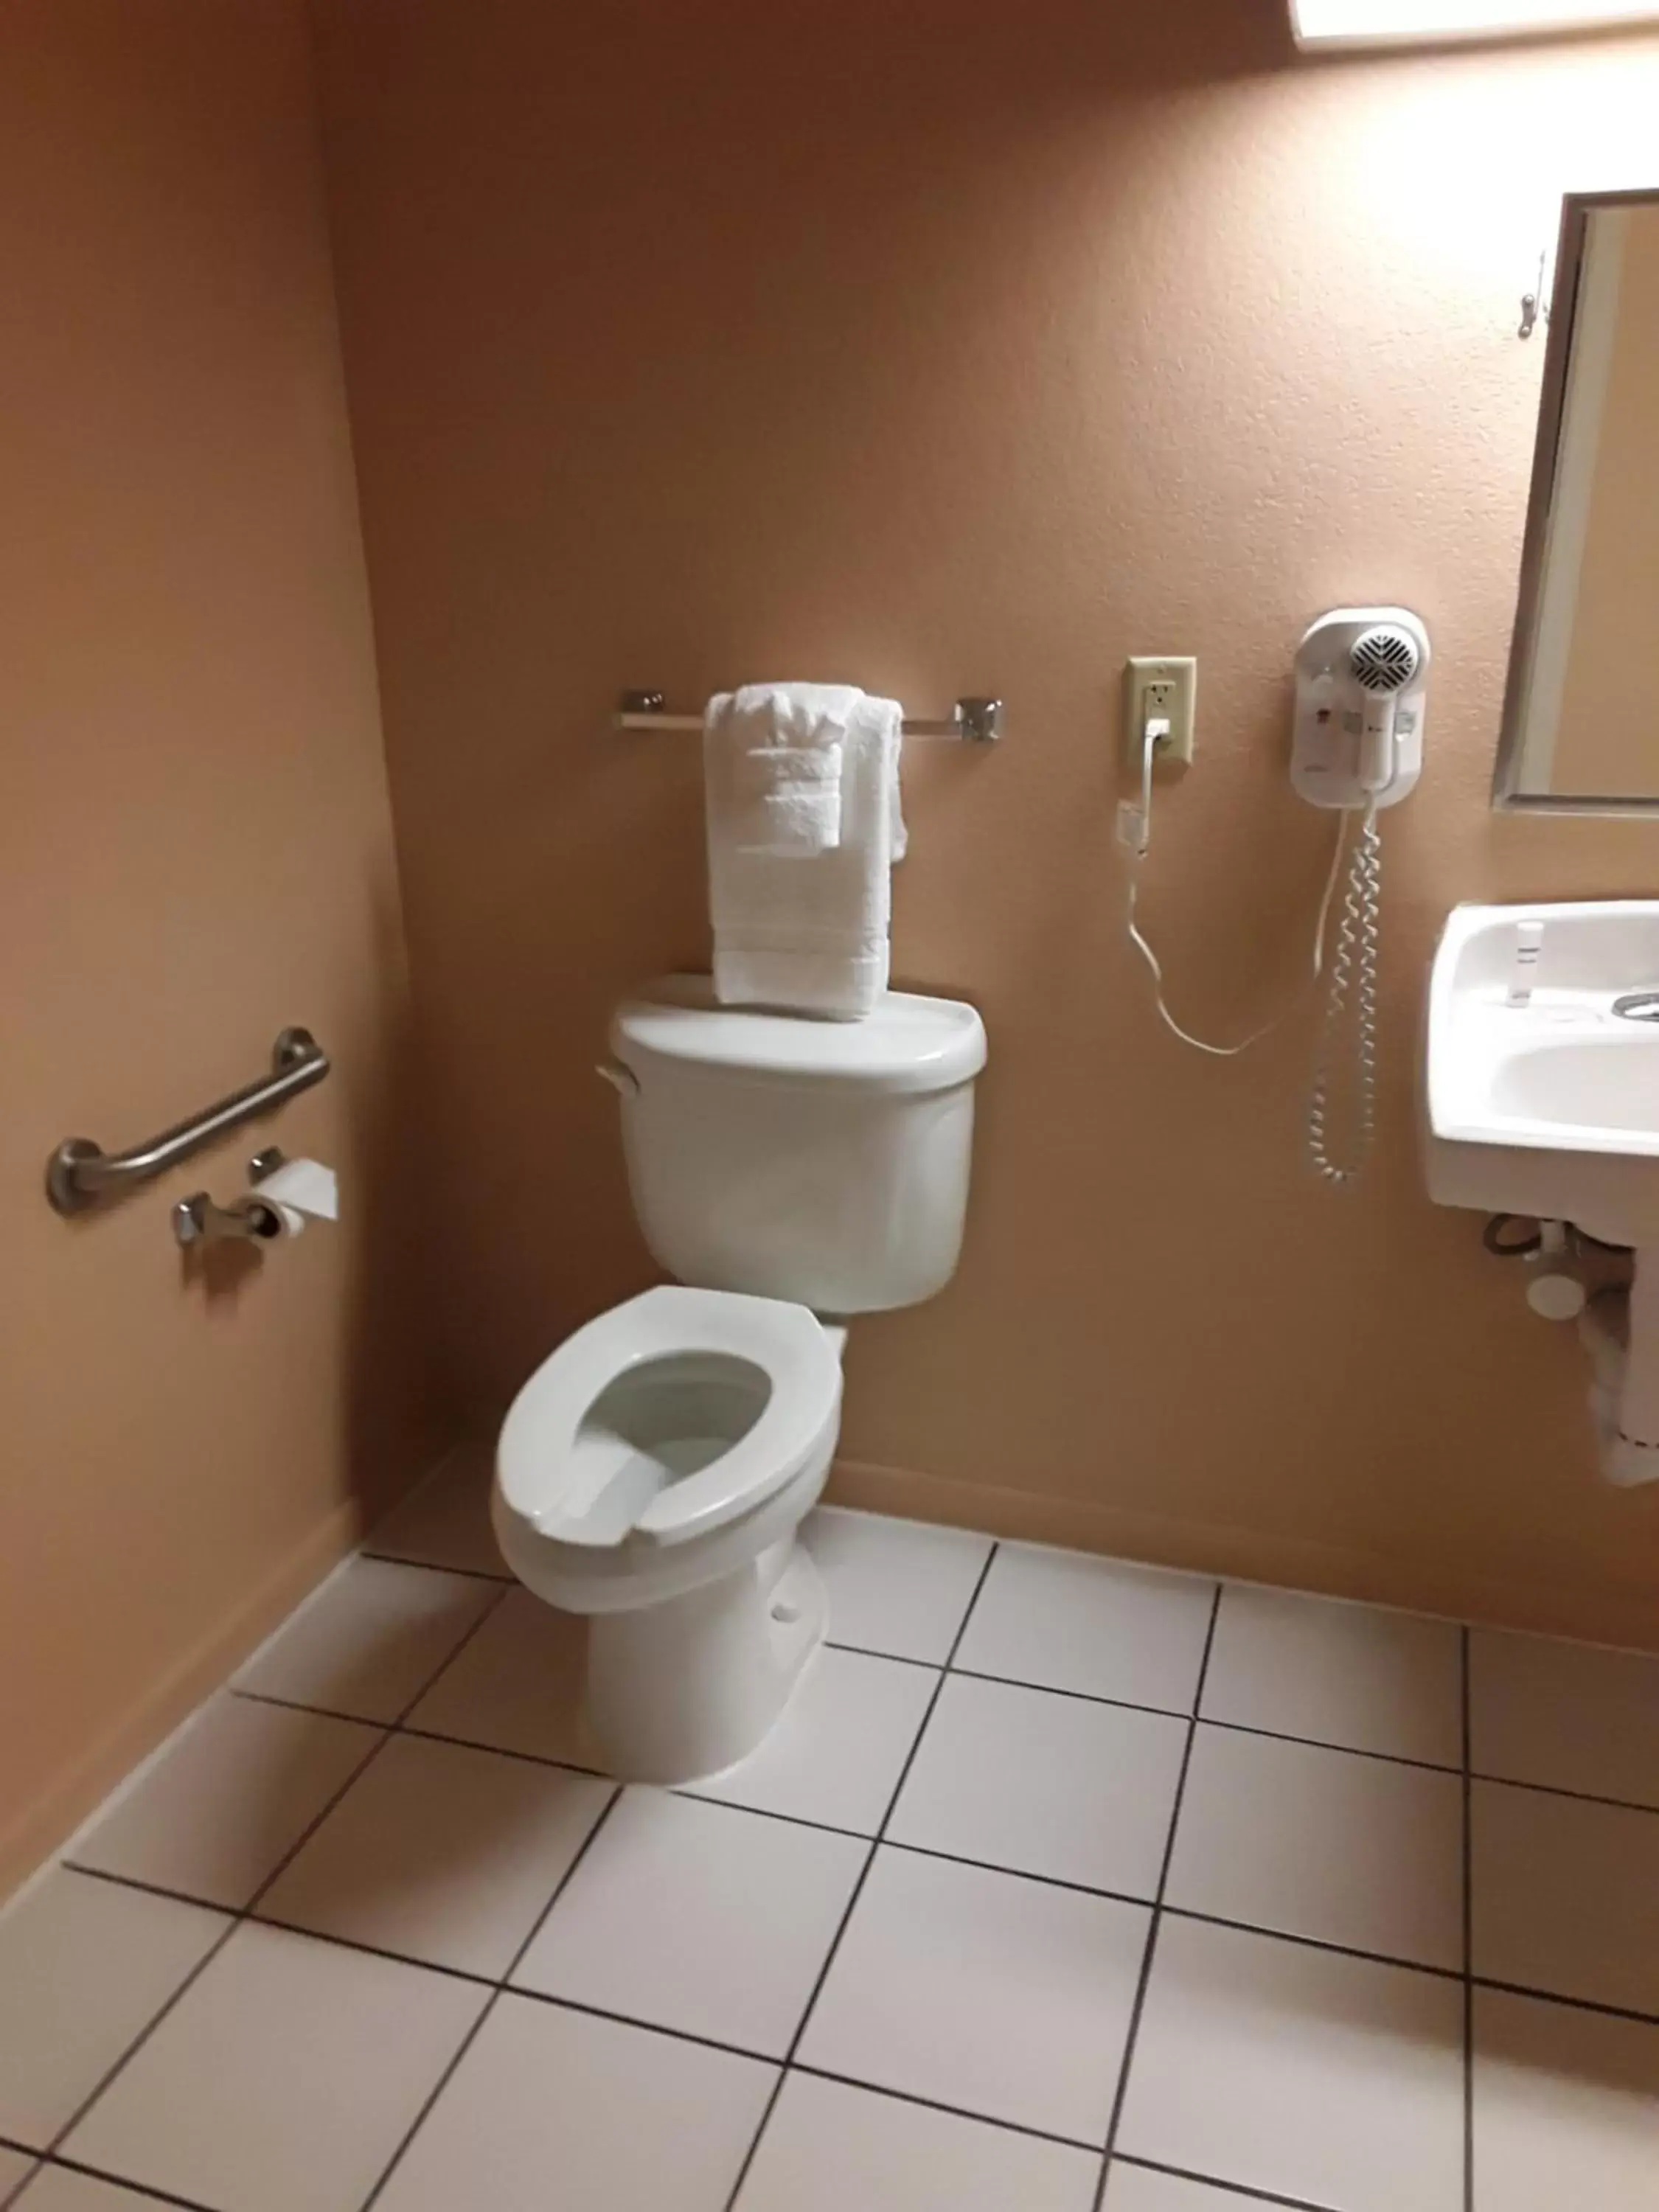 Bathroom in Italy Inn